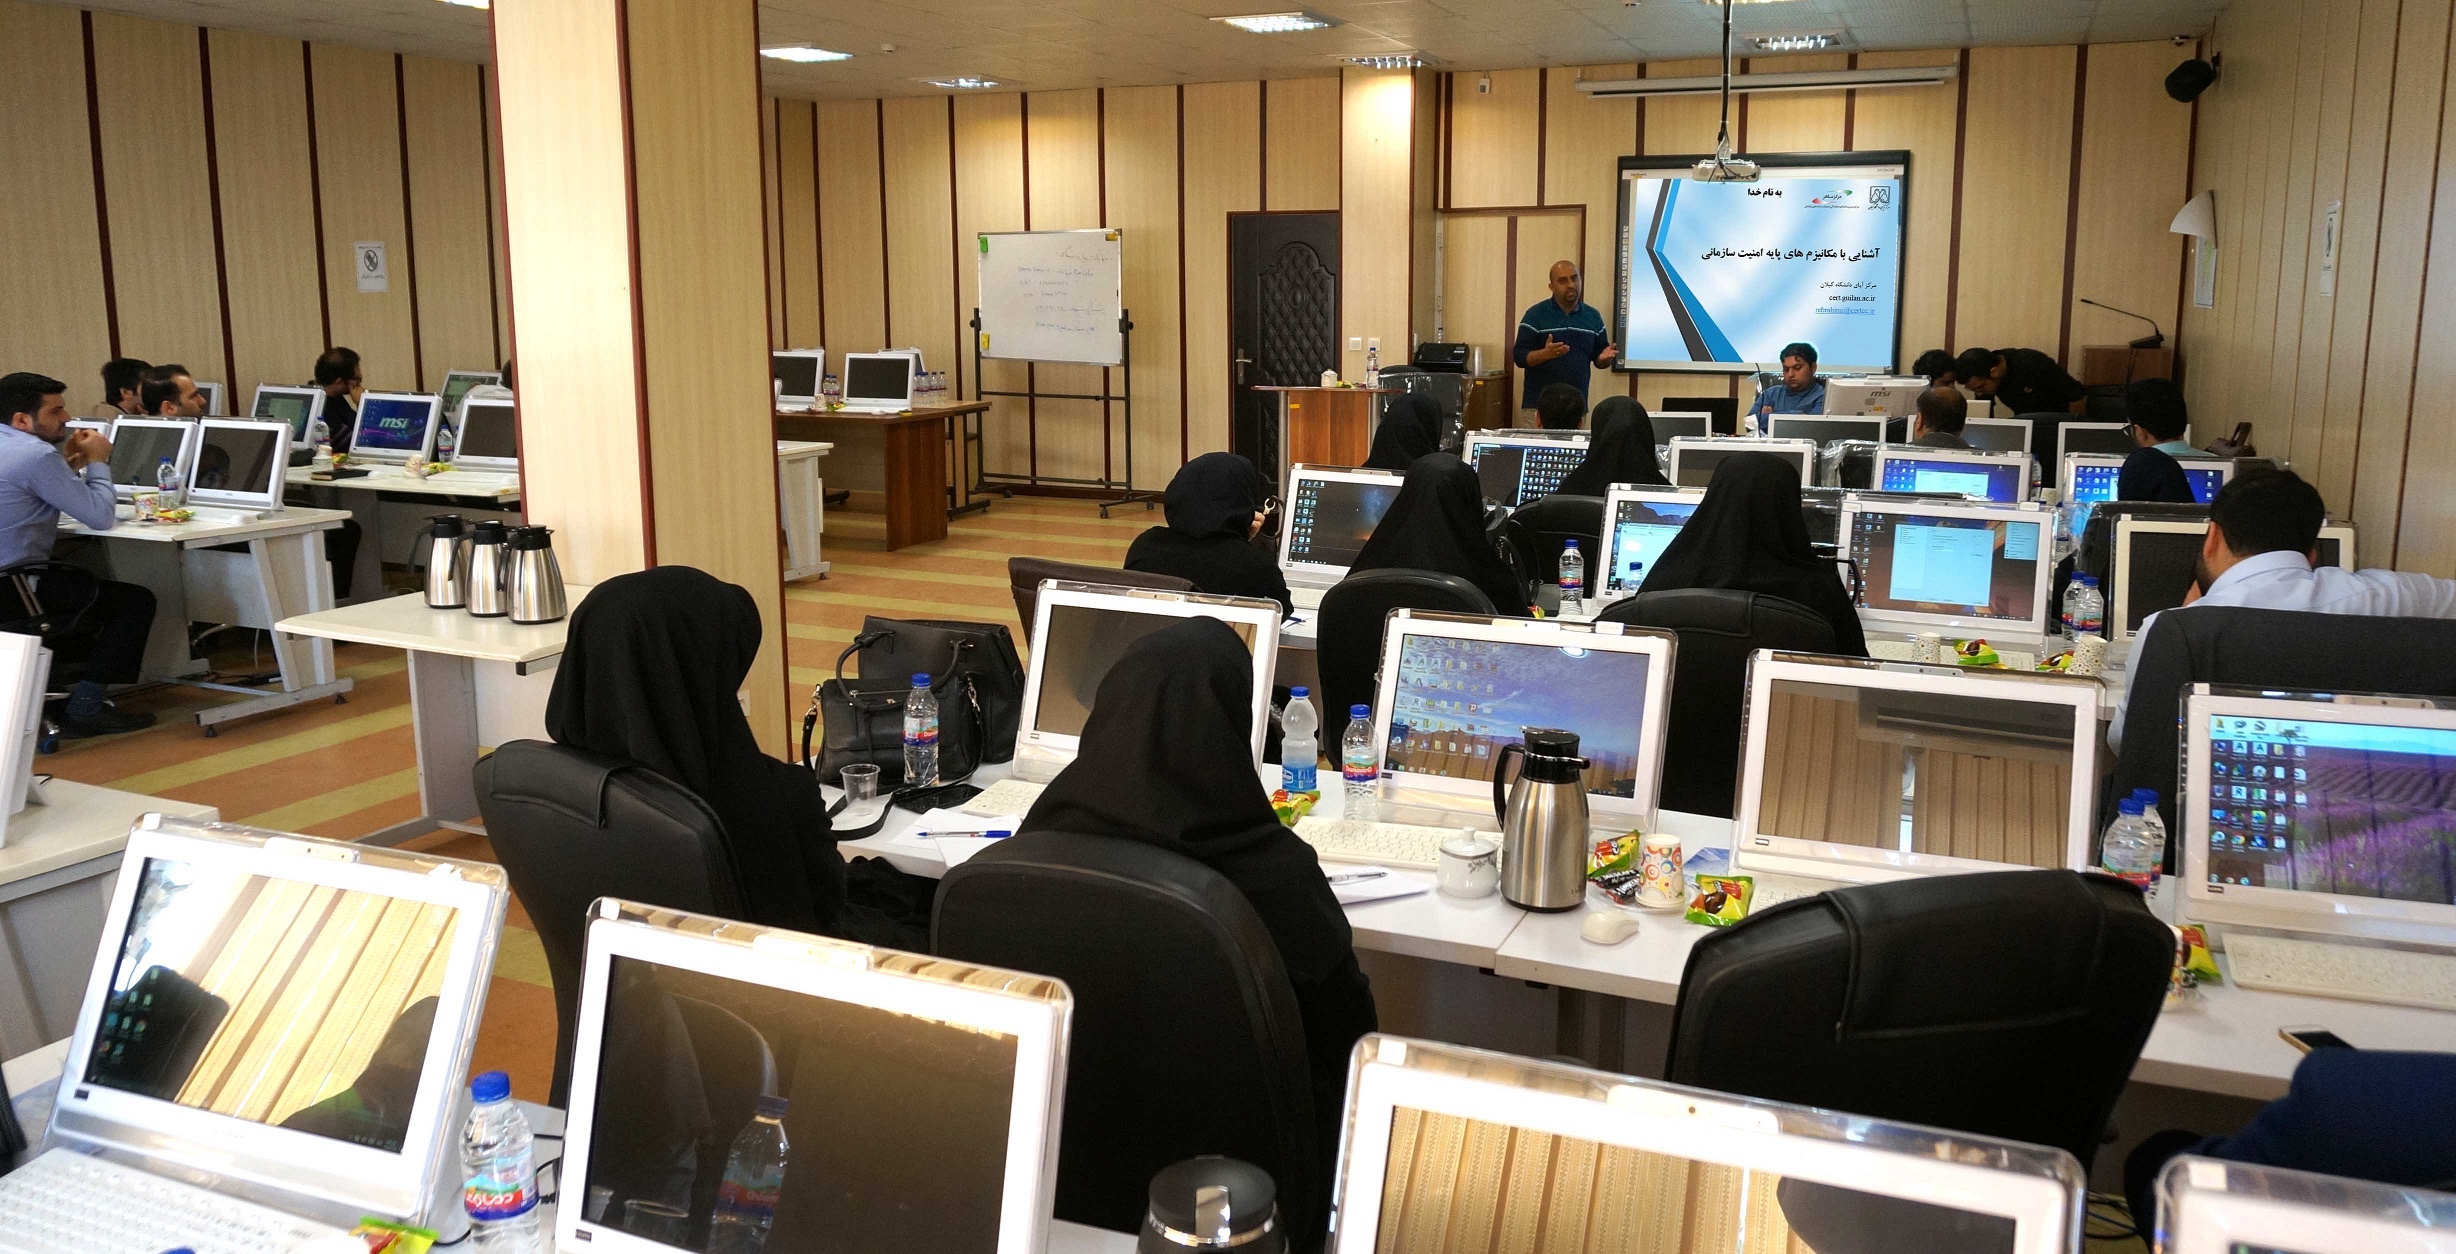 دوره آموزشی آشنایی با مکانیزم های پایه امنیت سازمانی در استان گیلان برگزار شد